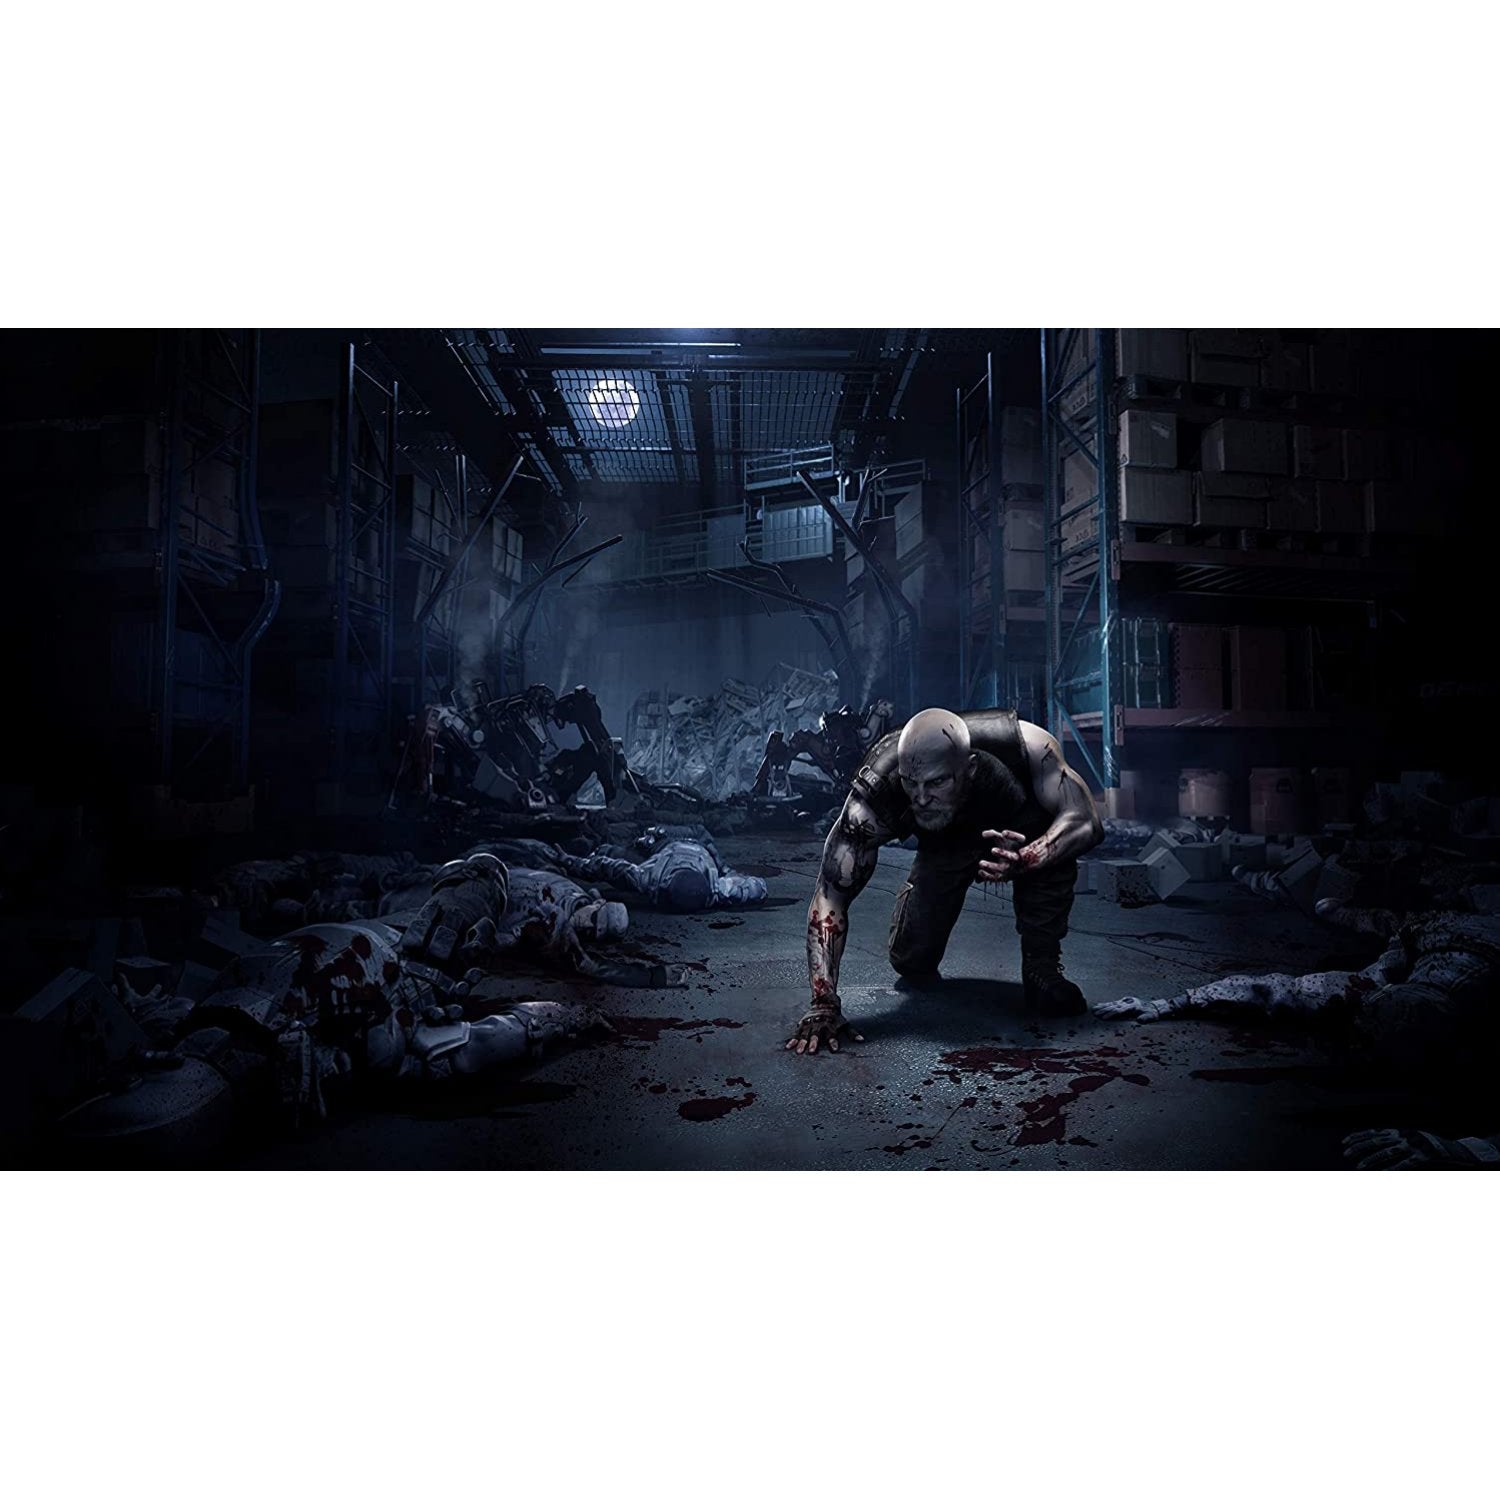 PS5 Werewolf: The Apocalypse (M18)